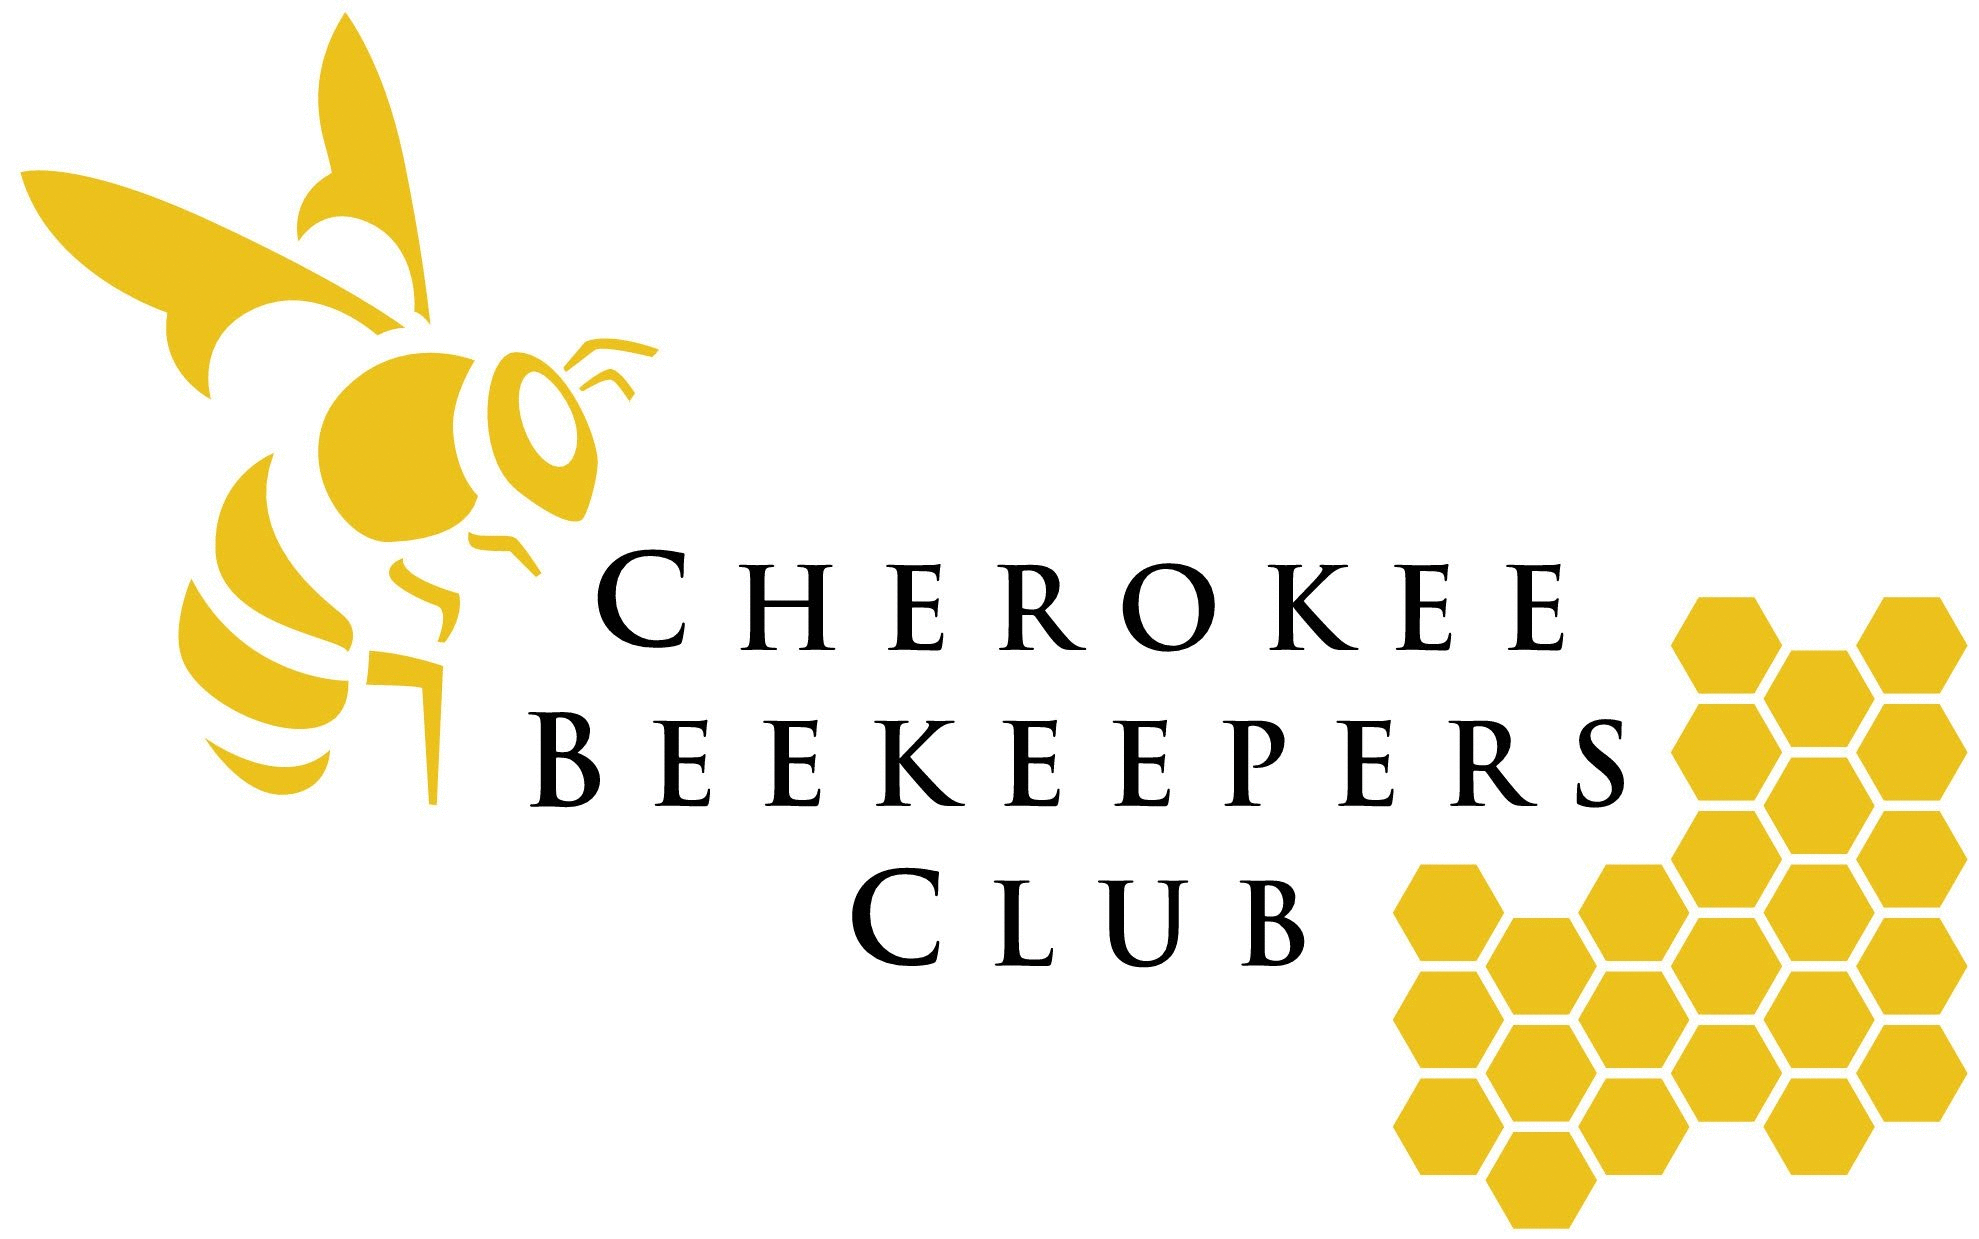 Beekeeping Logo - Bee Products!